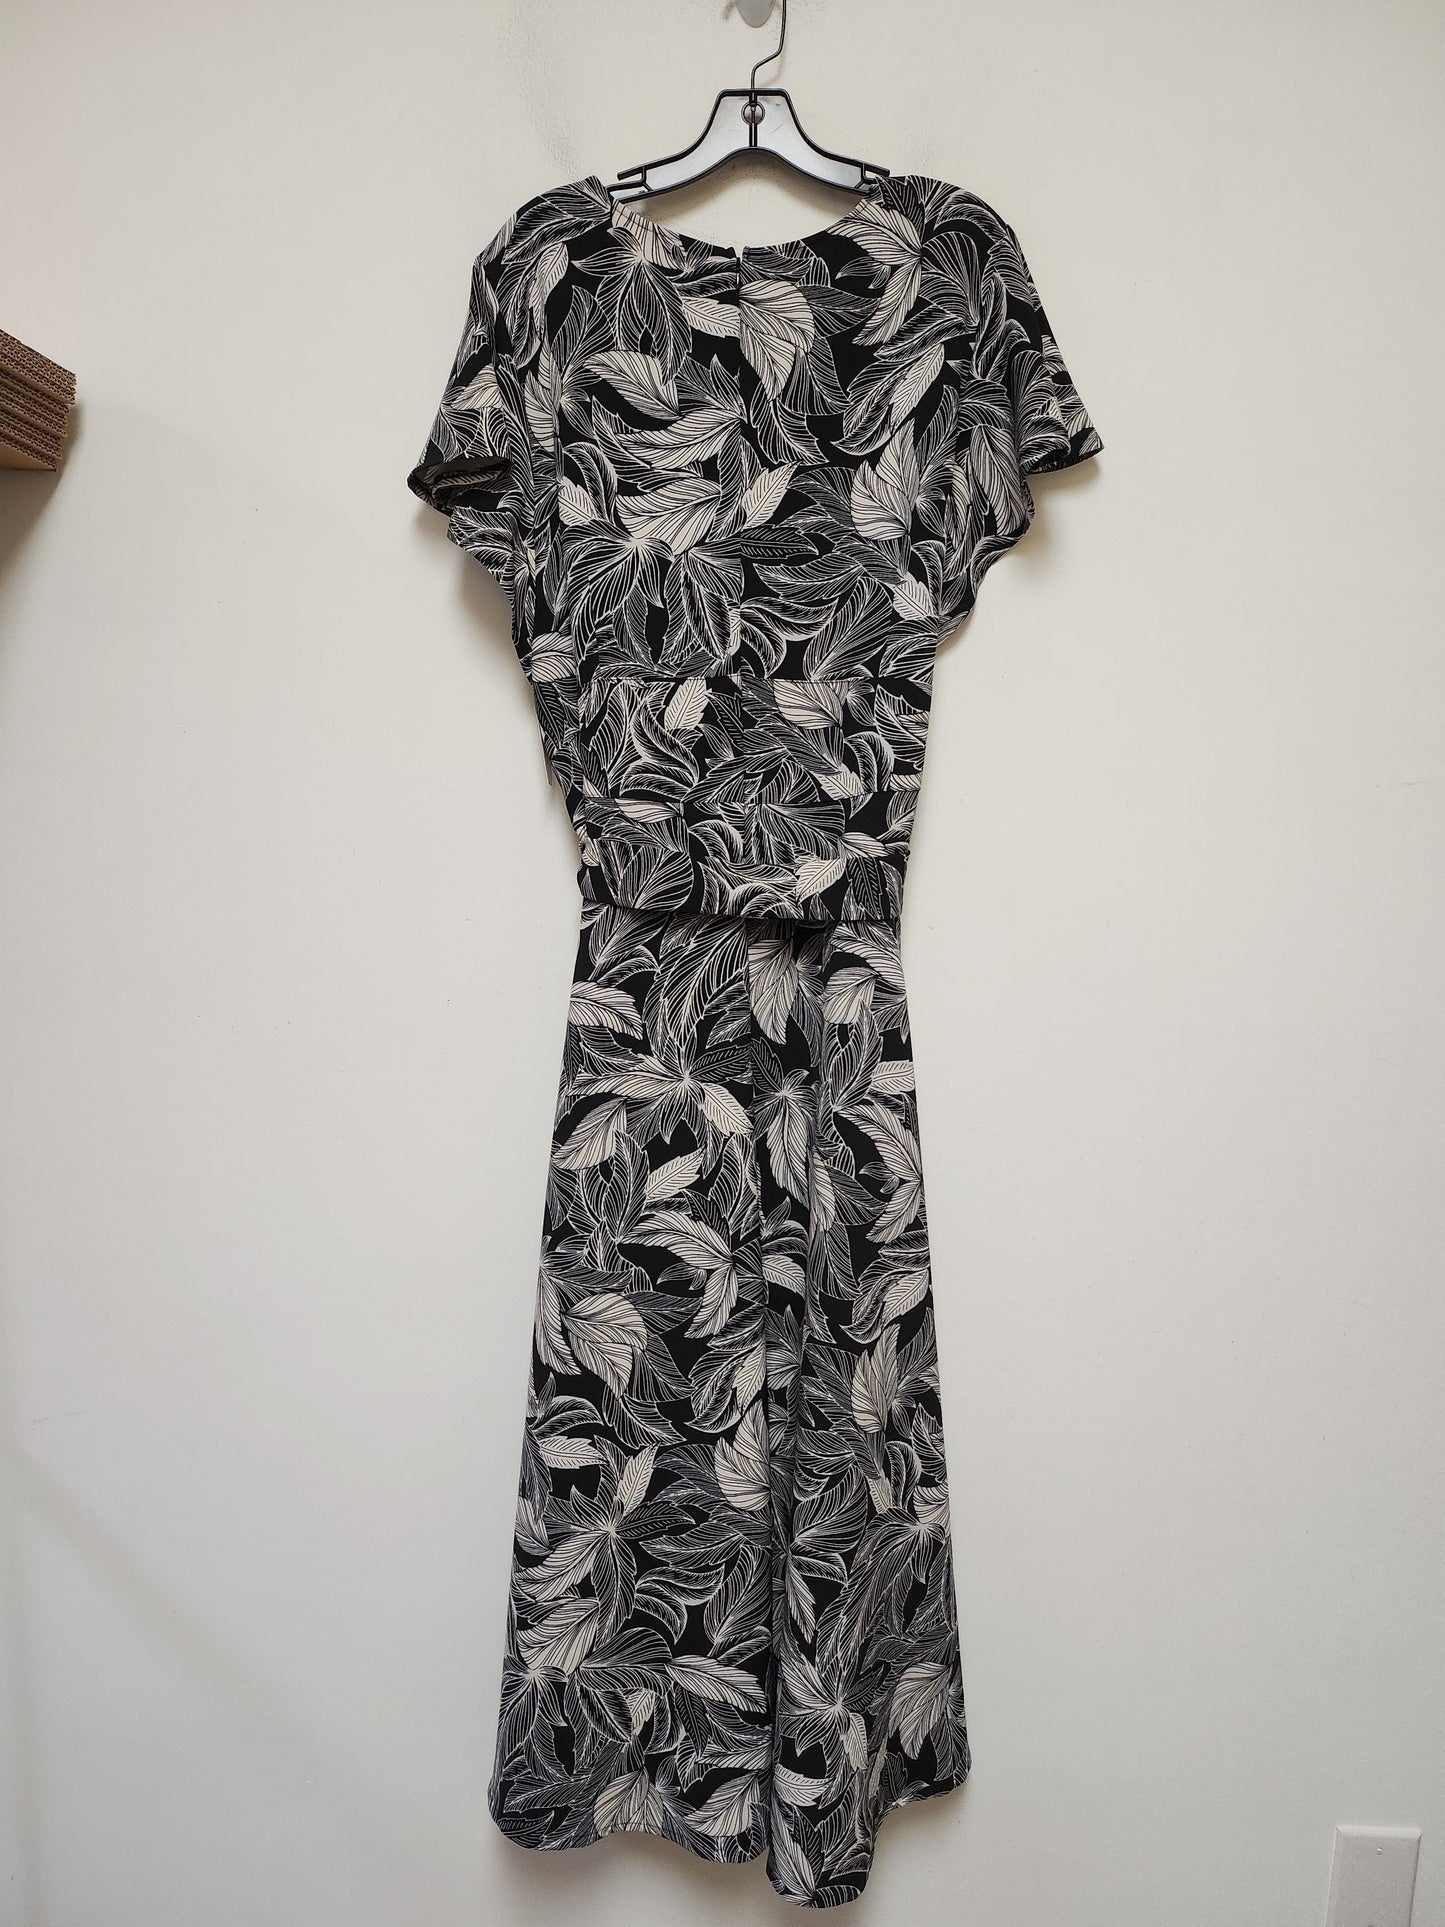 Tropical Print Dress Casual Maxi Lane Bryant, Size 3x